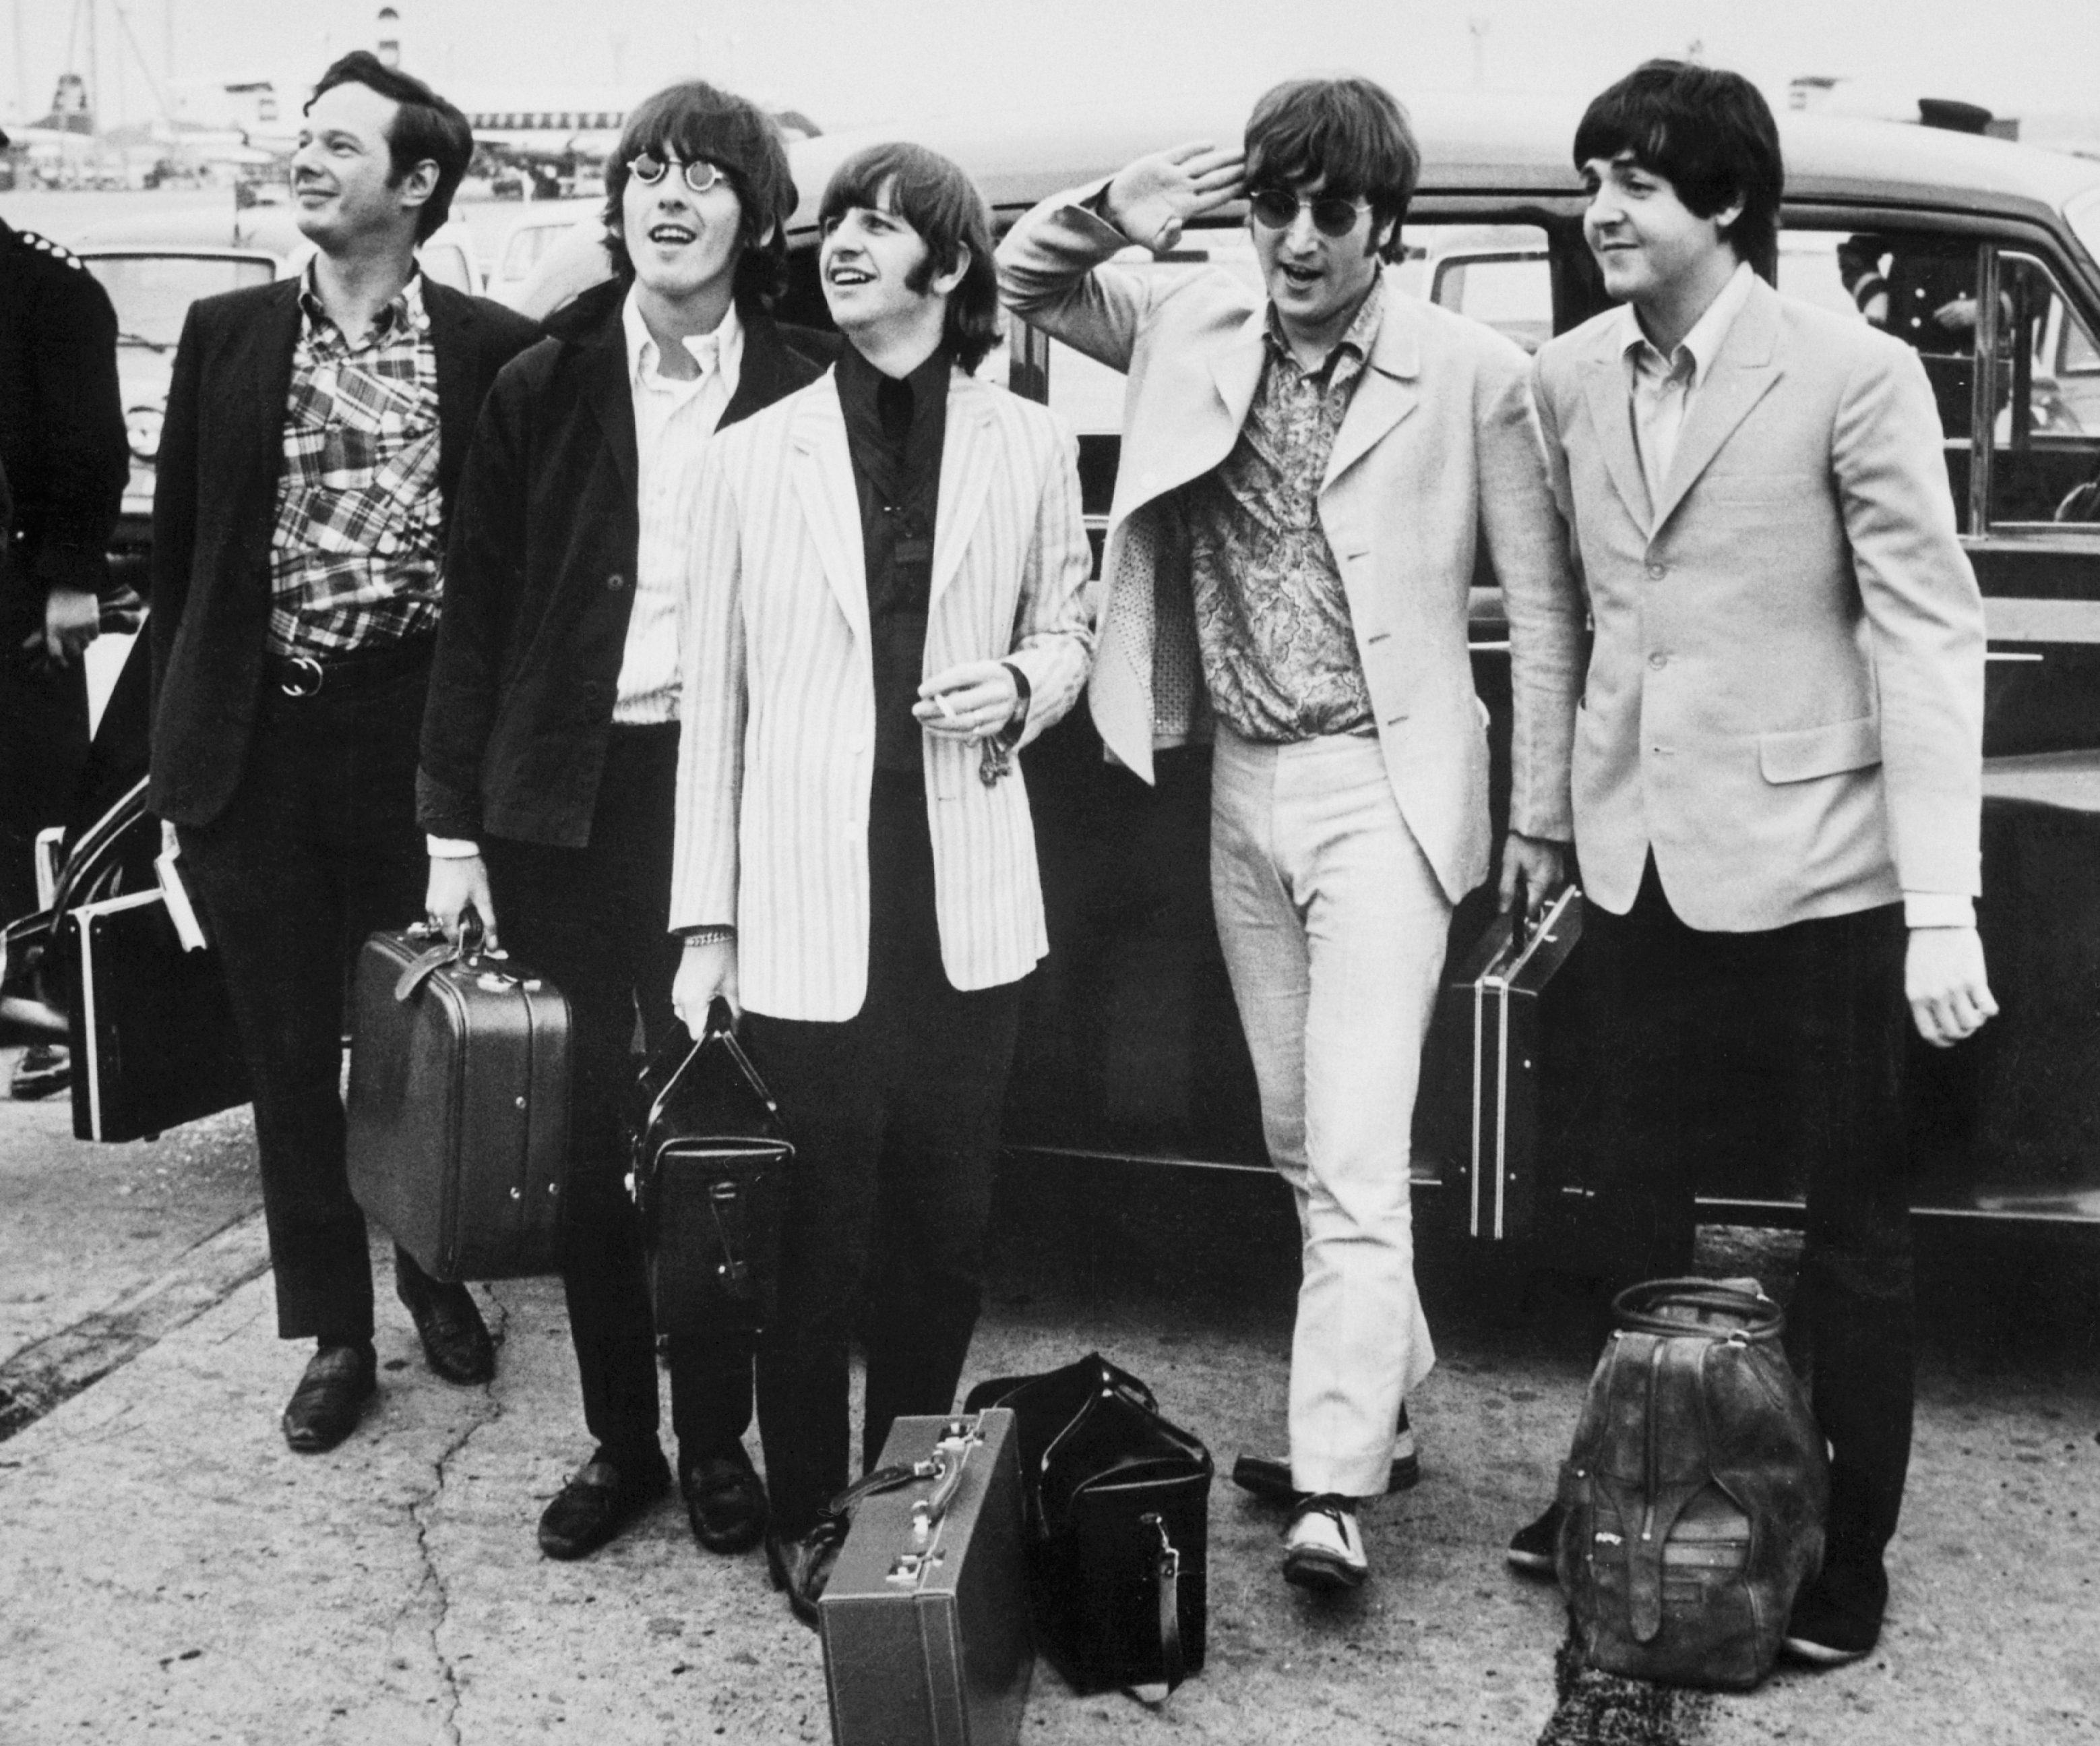 “Para mi representan las relaciones humanas directas, despreocupadas, afables y desinhibidas que siempre había querido y que nunca había encontrado", dijo Epstein acerca de The Beatles